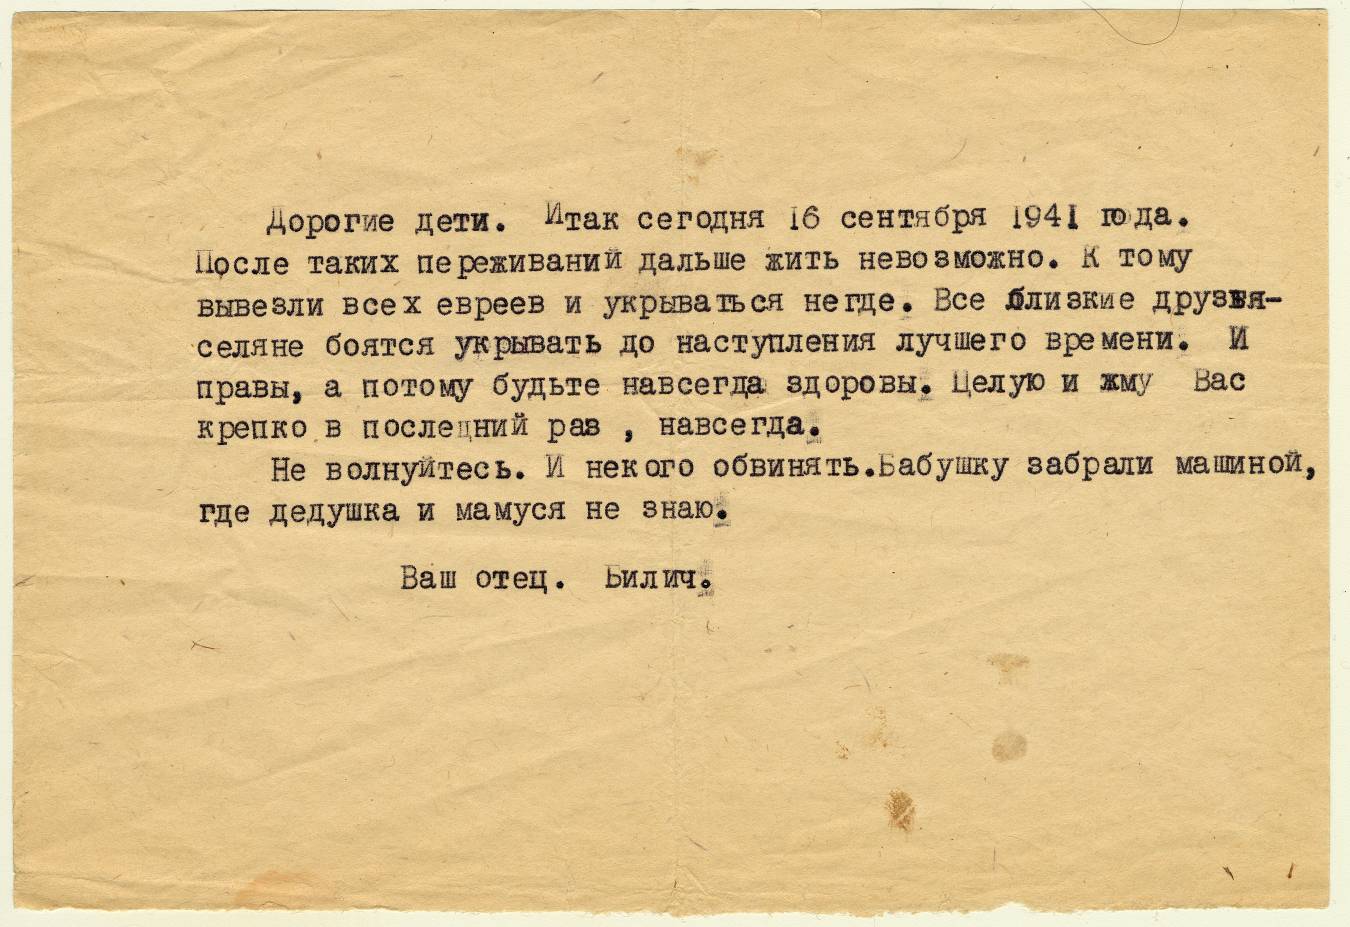 Lettre de Billich, 19 septembre 1941.